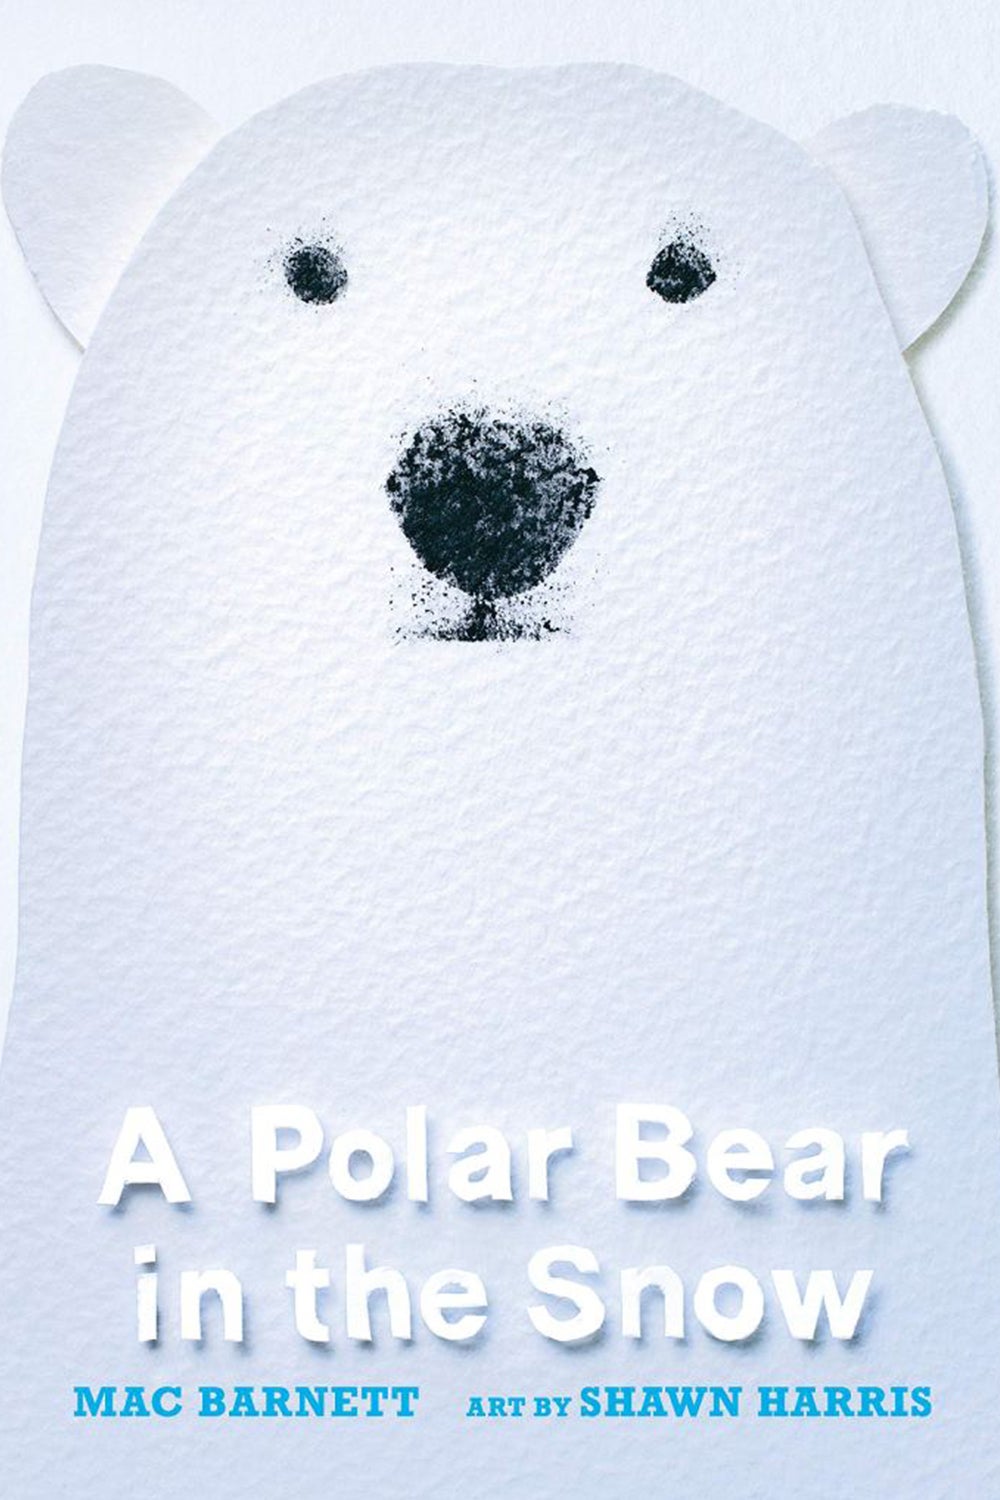 A Polar Bear In The Snow by Mac Barnett